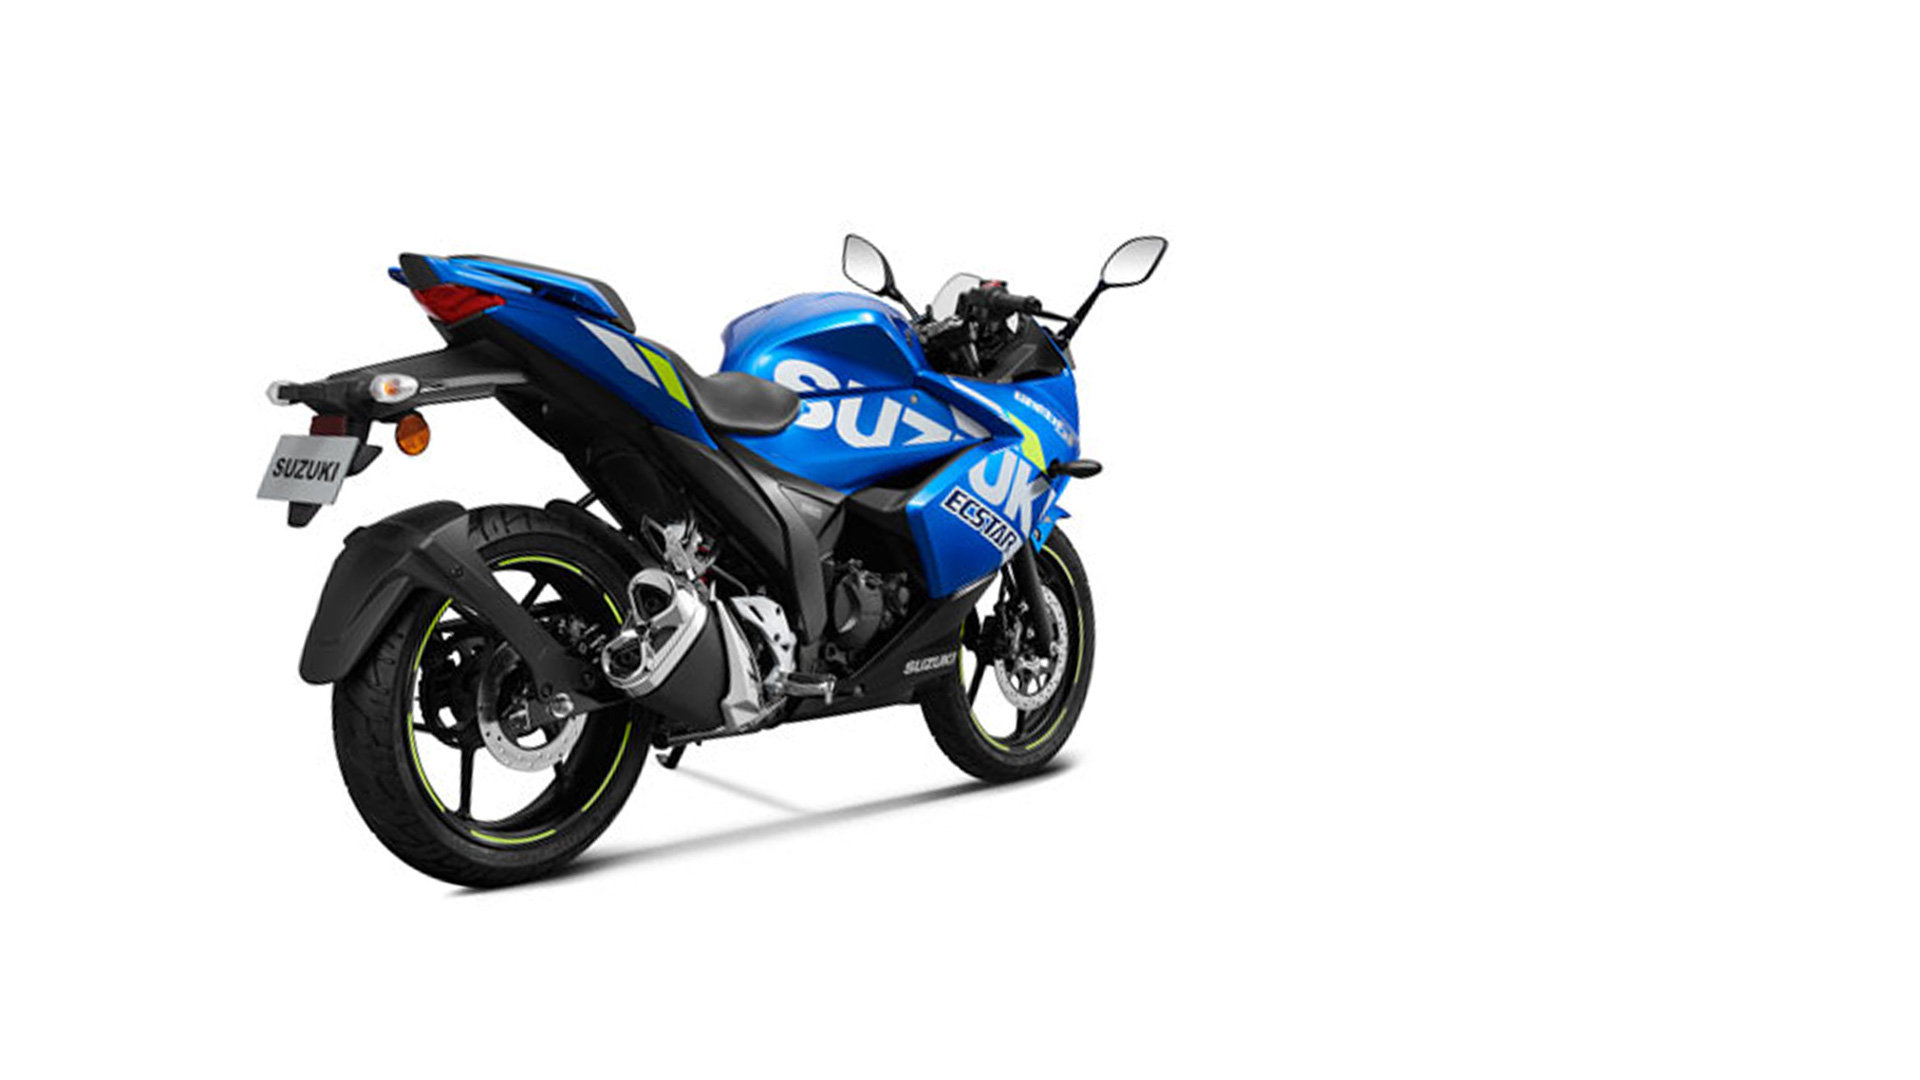 Suzuki Gixxer SF 2019 MotoGP edition